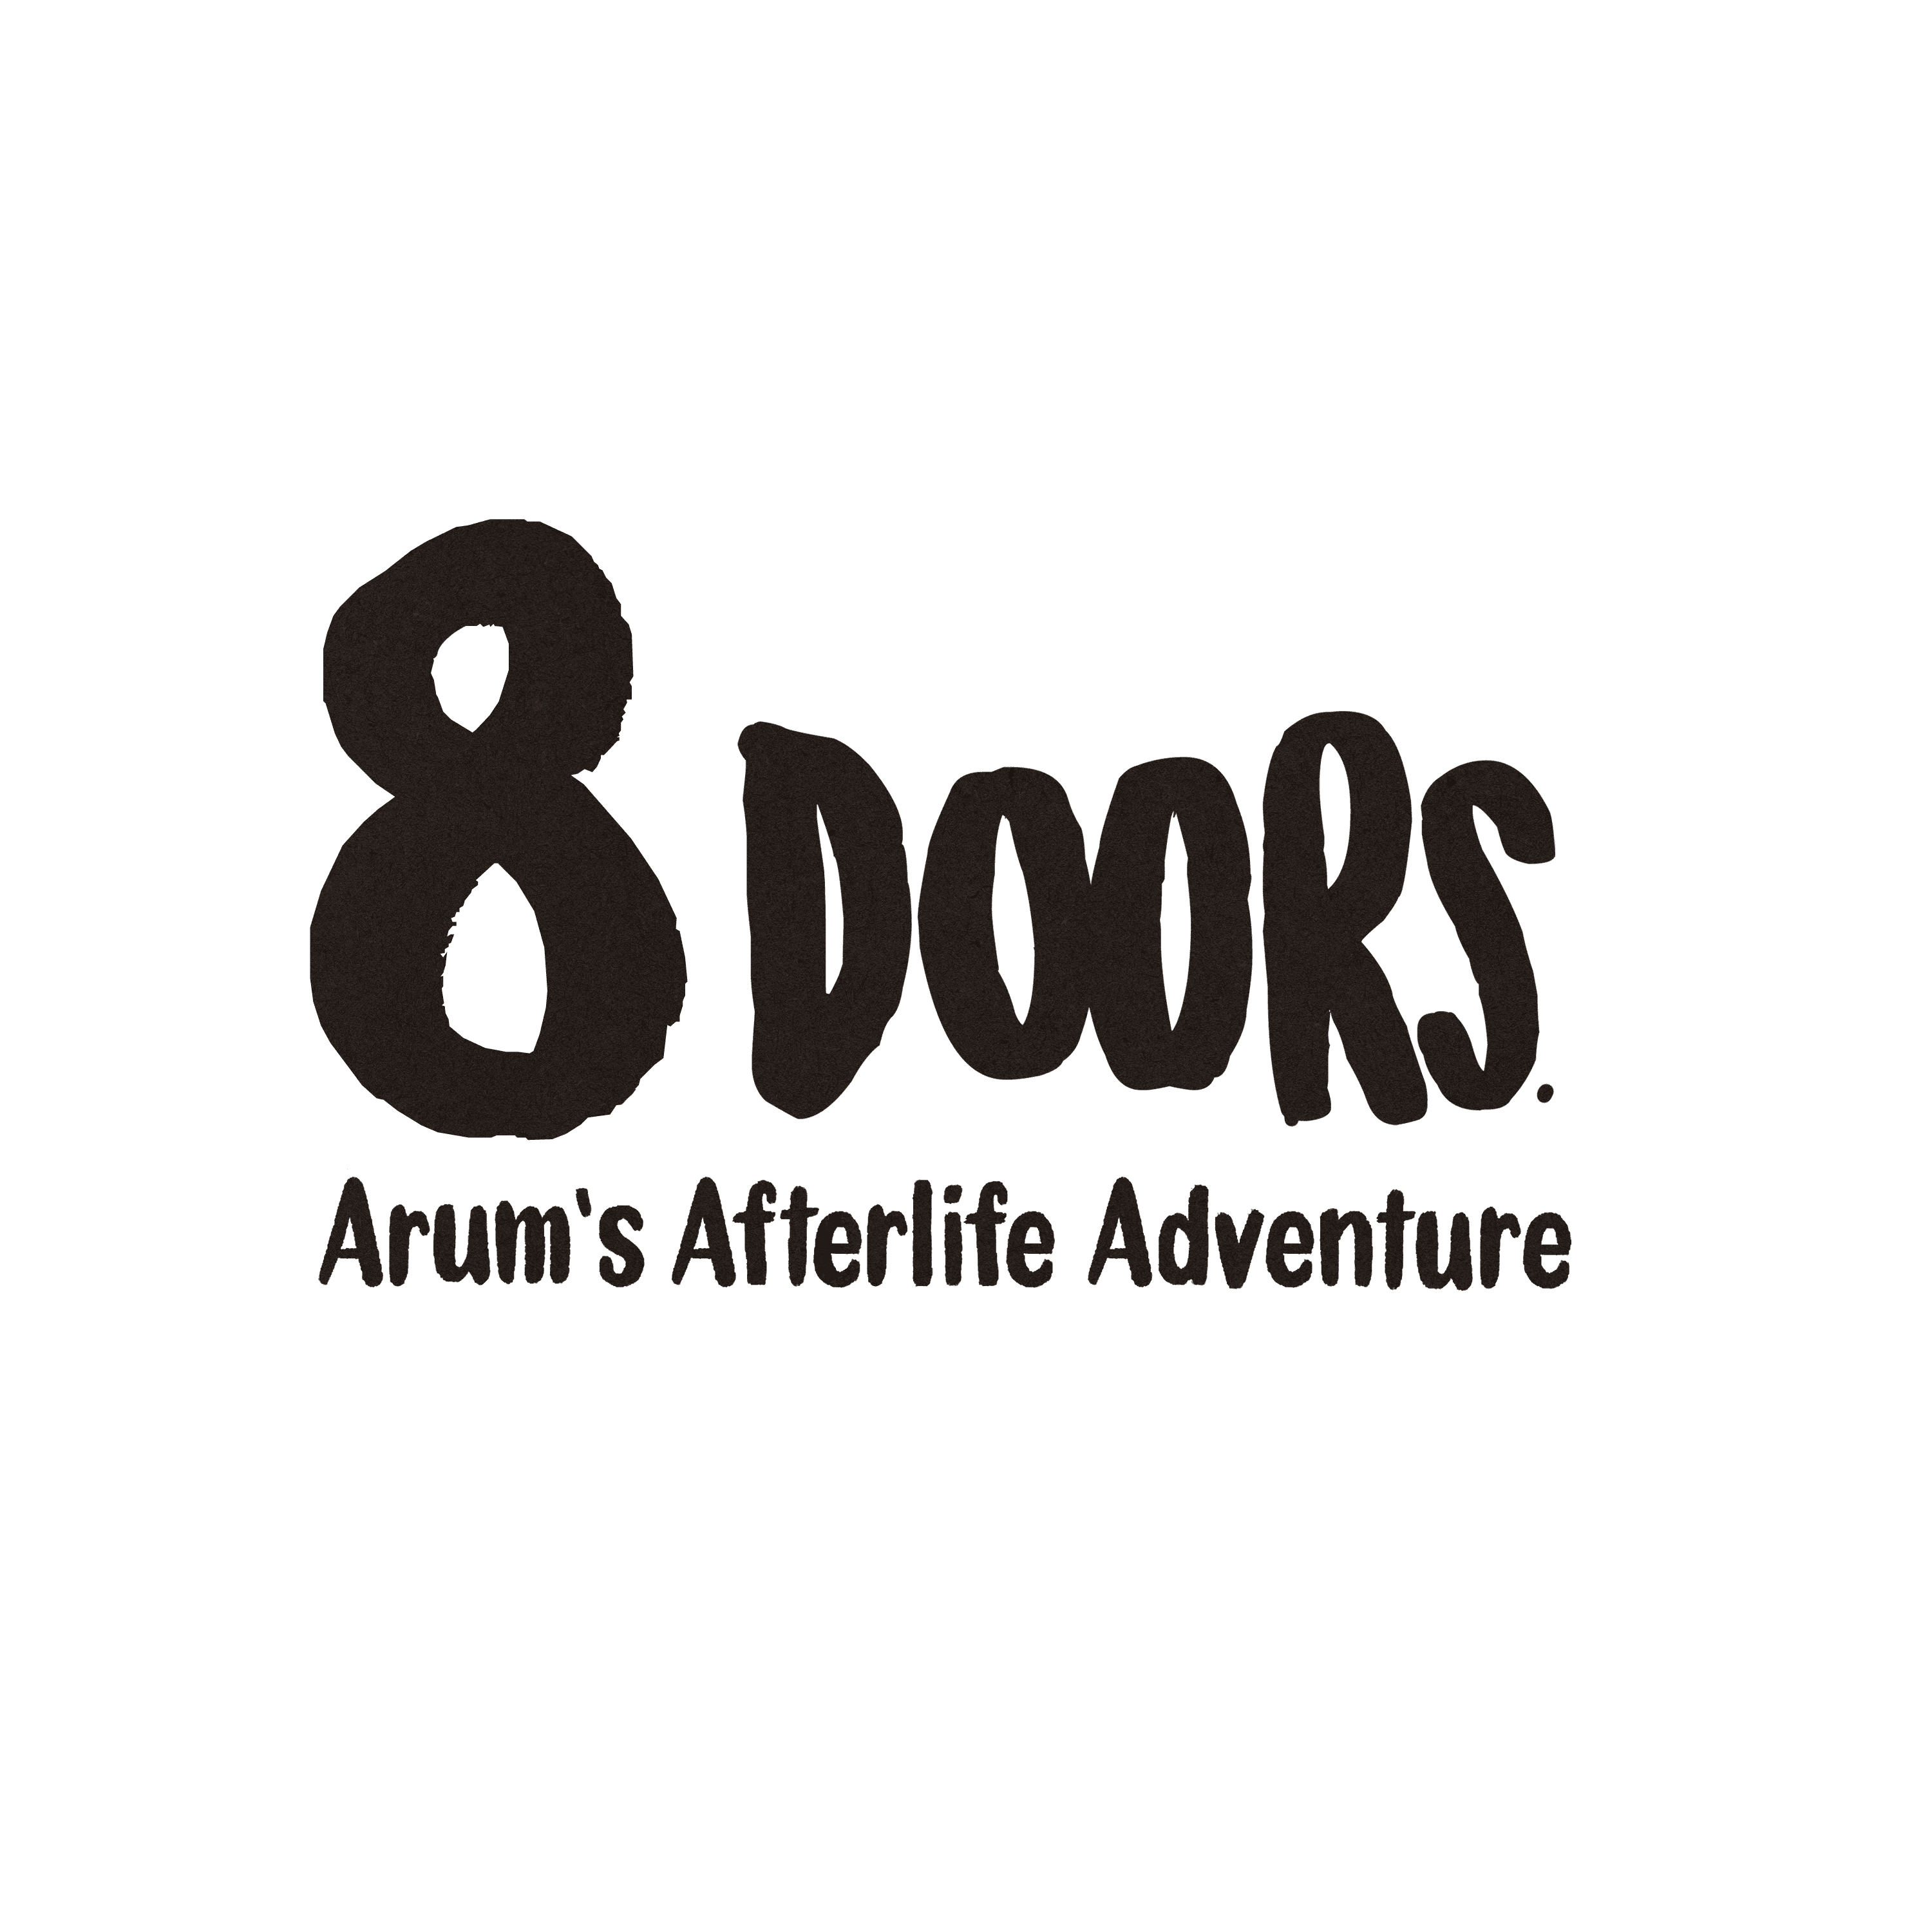 8Doors: Arum's Afterlife Adventure (Demo)